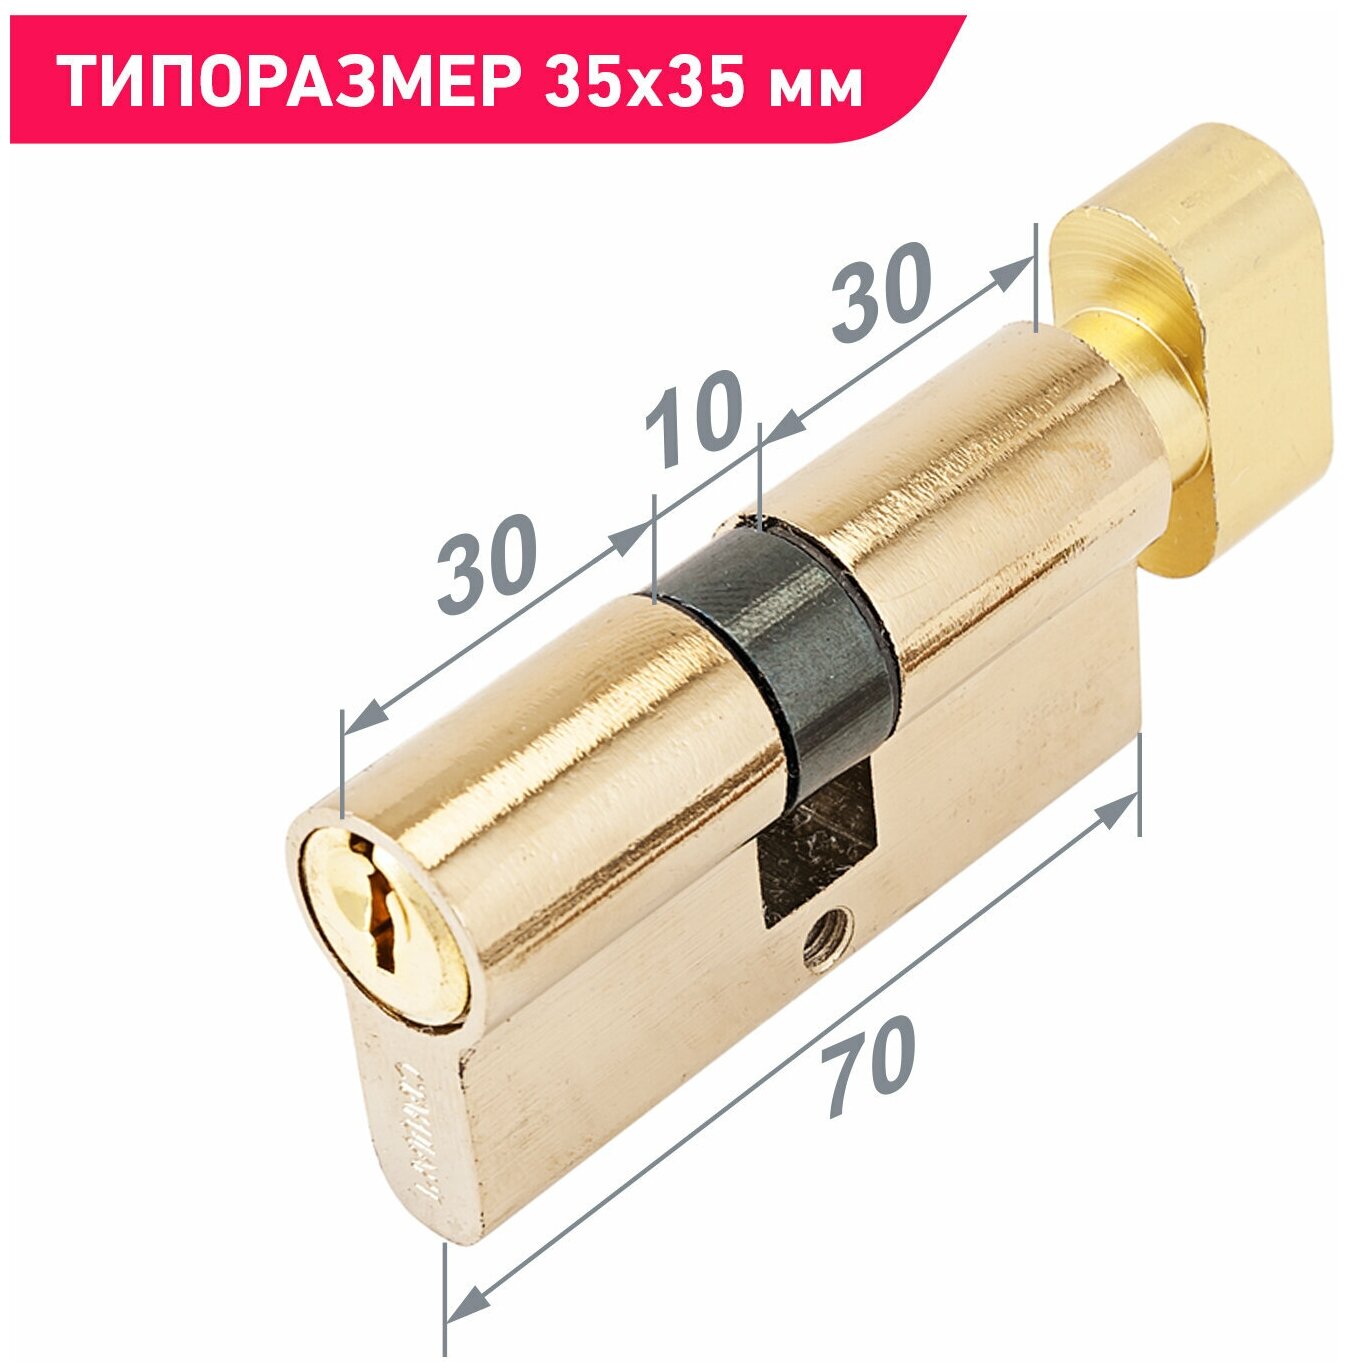 Цилиндровый механизм (личинка замка) с вертушкой для замка Стандарт Z. I.70В-5K (30Вх10х30 мм) BP цвет золото 5 ключей